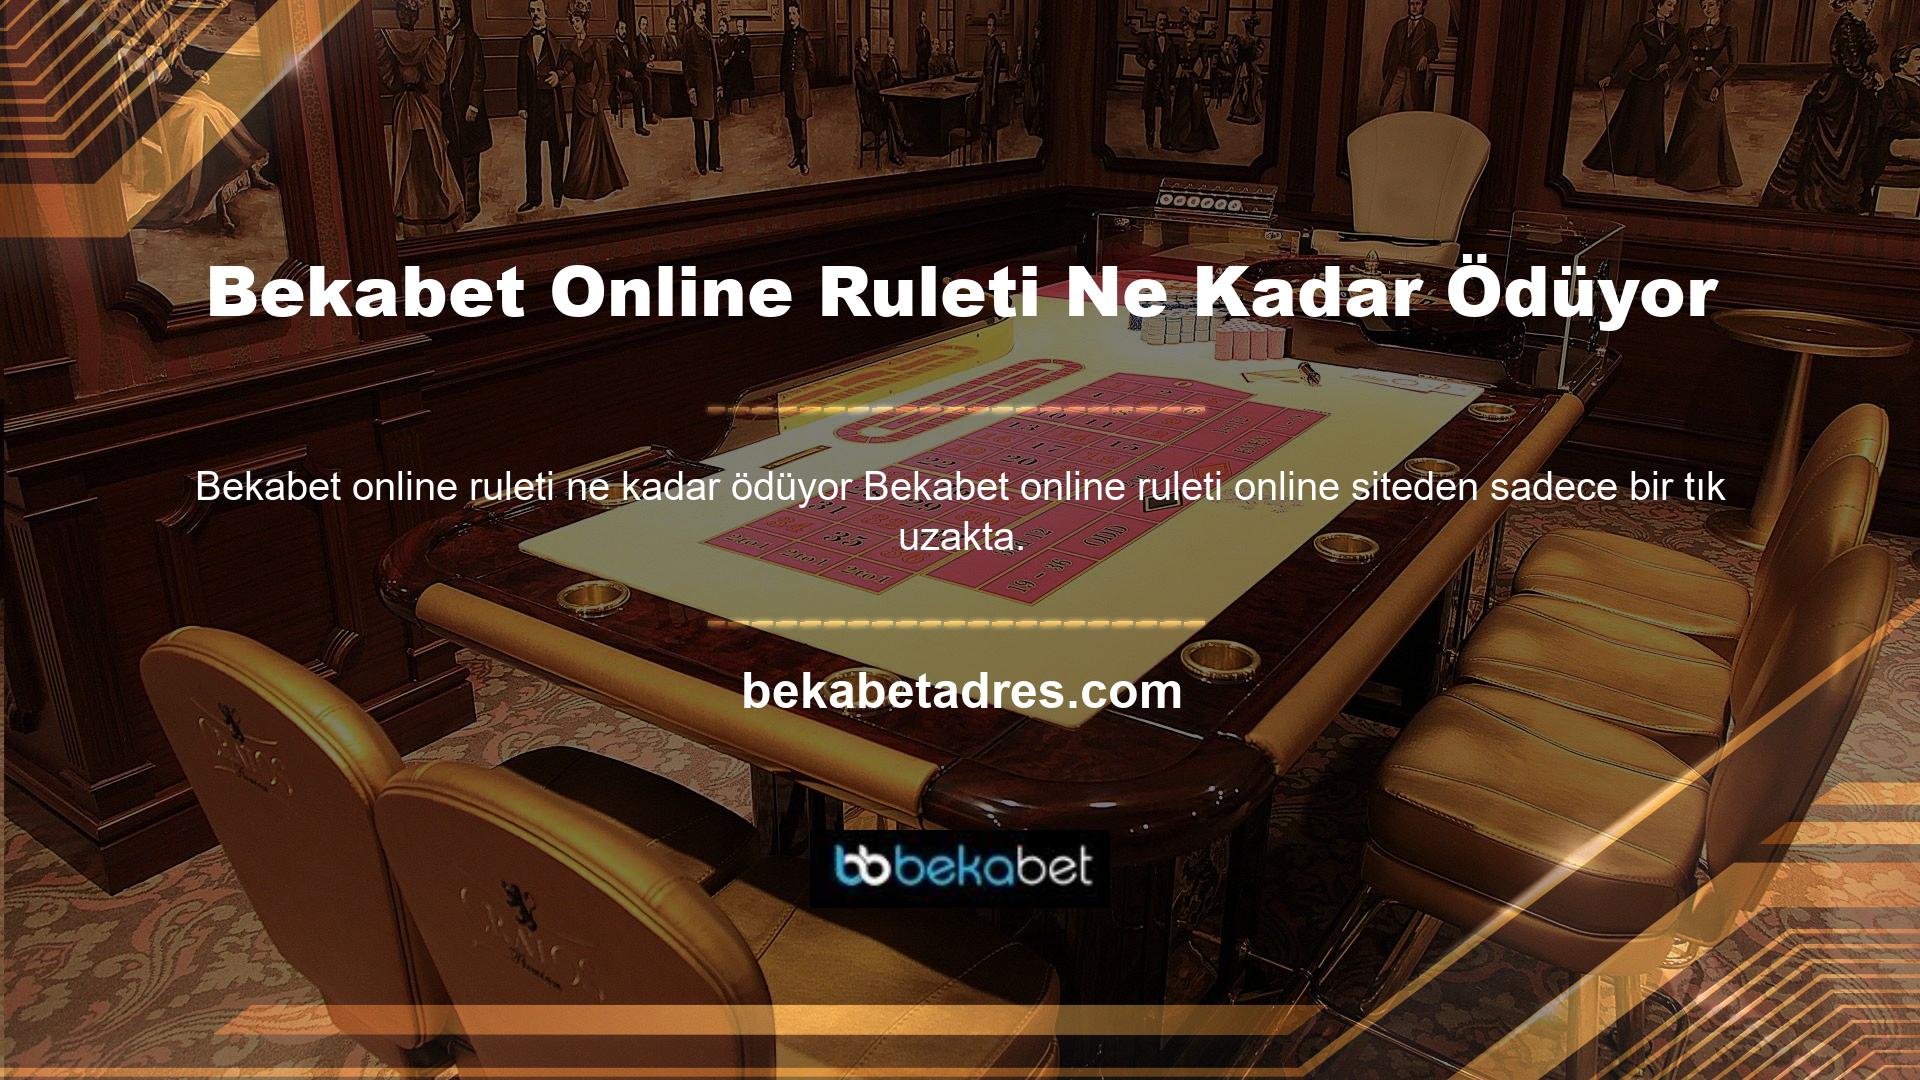 Kayıt ve üyelik işlemlerini tamamladıktan sonra Avrupa ve Japon menşeli Bekabet sitesinin sunduğu canlı casino hizmetlerinden biri olan Rulet'te şansınızı deneyebilirsiniz